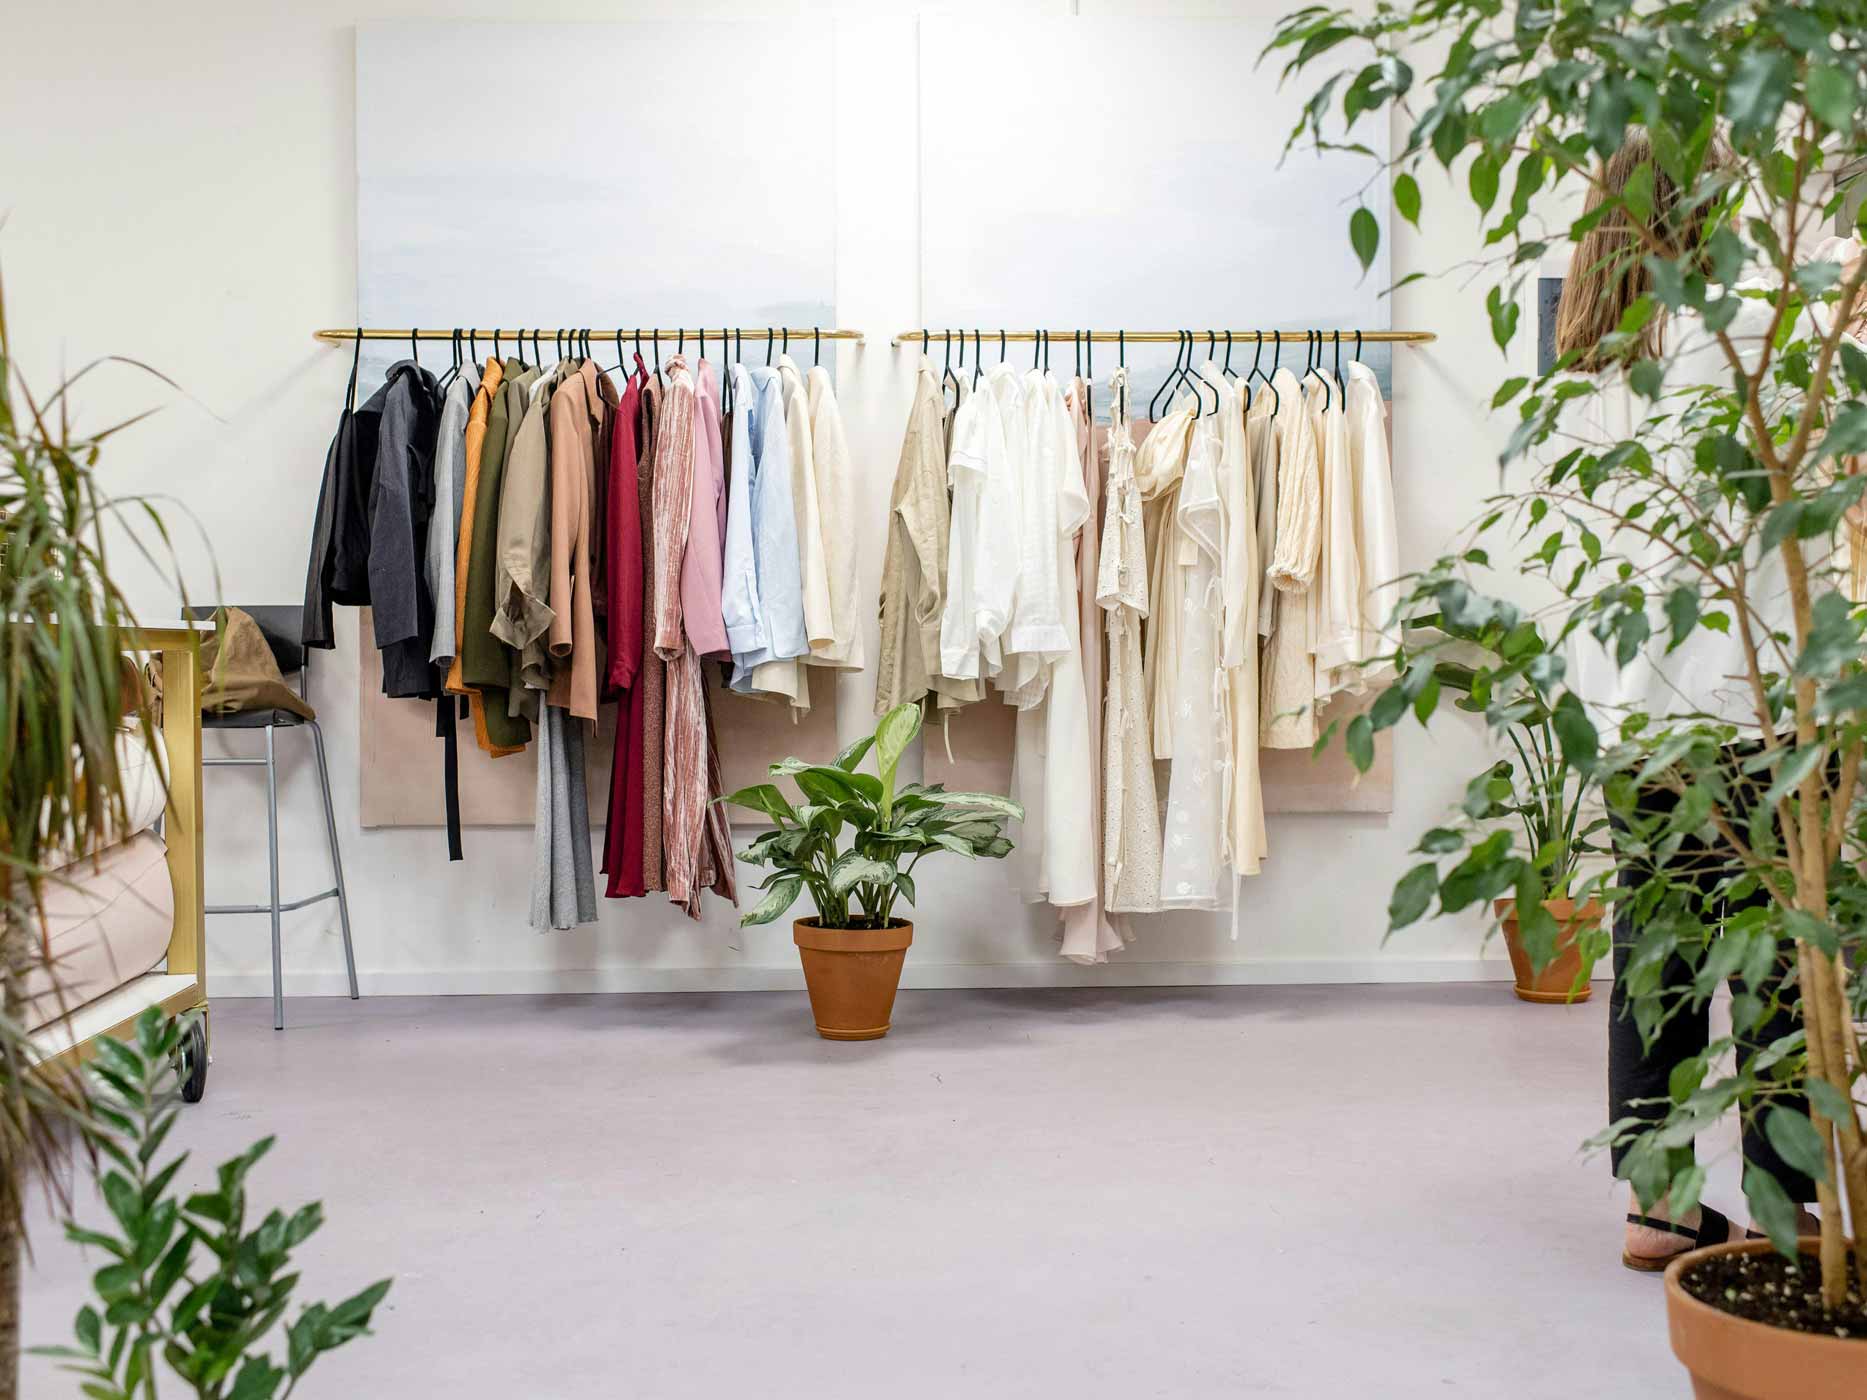 Klamotten hängen mitten in einem Raum voller Pflanzen geordnet auf Kleiderstangen